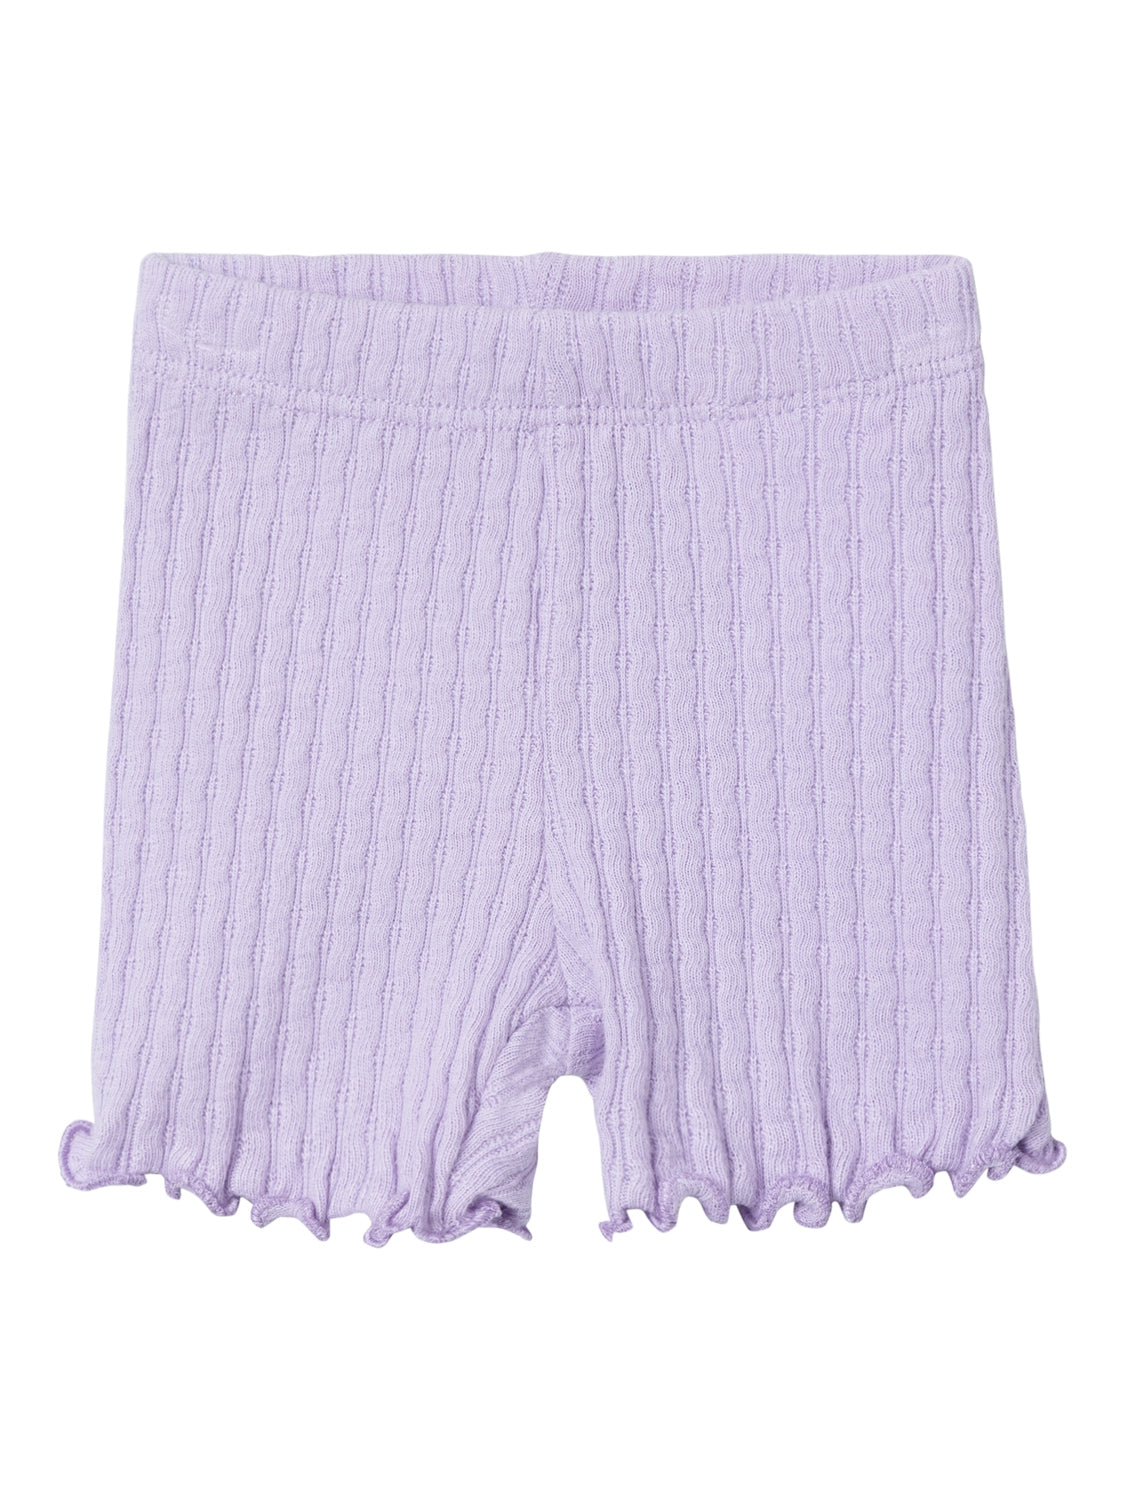 Name it - Jilise biker shorts - Purple rose